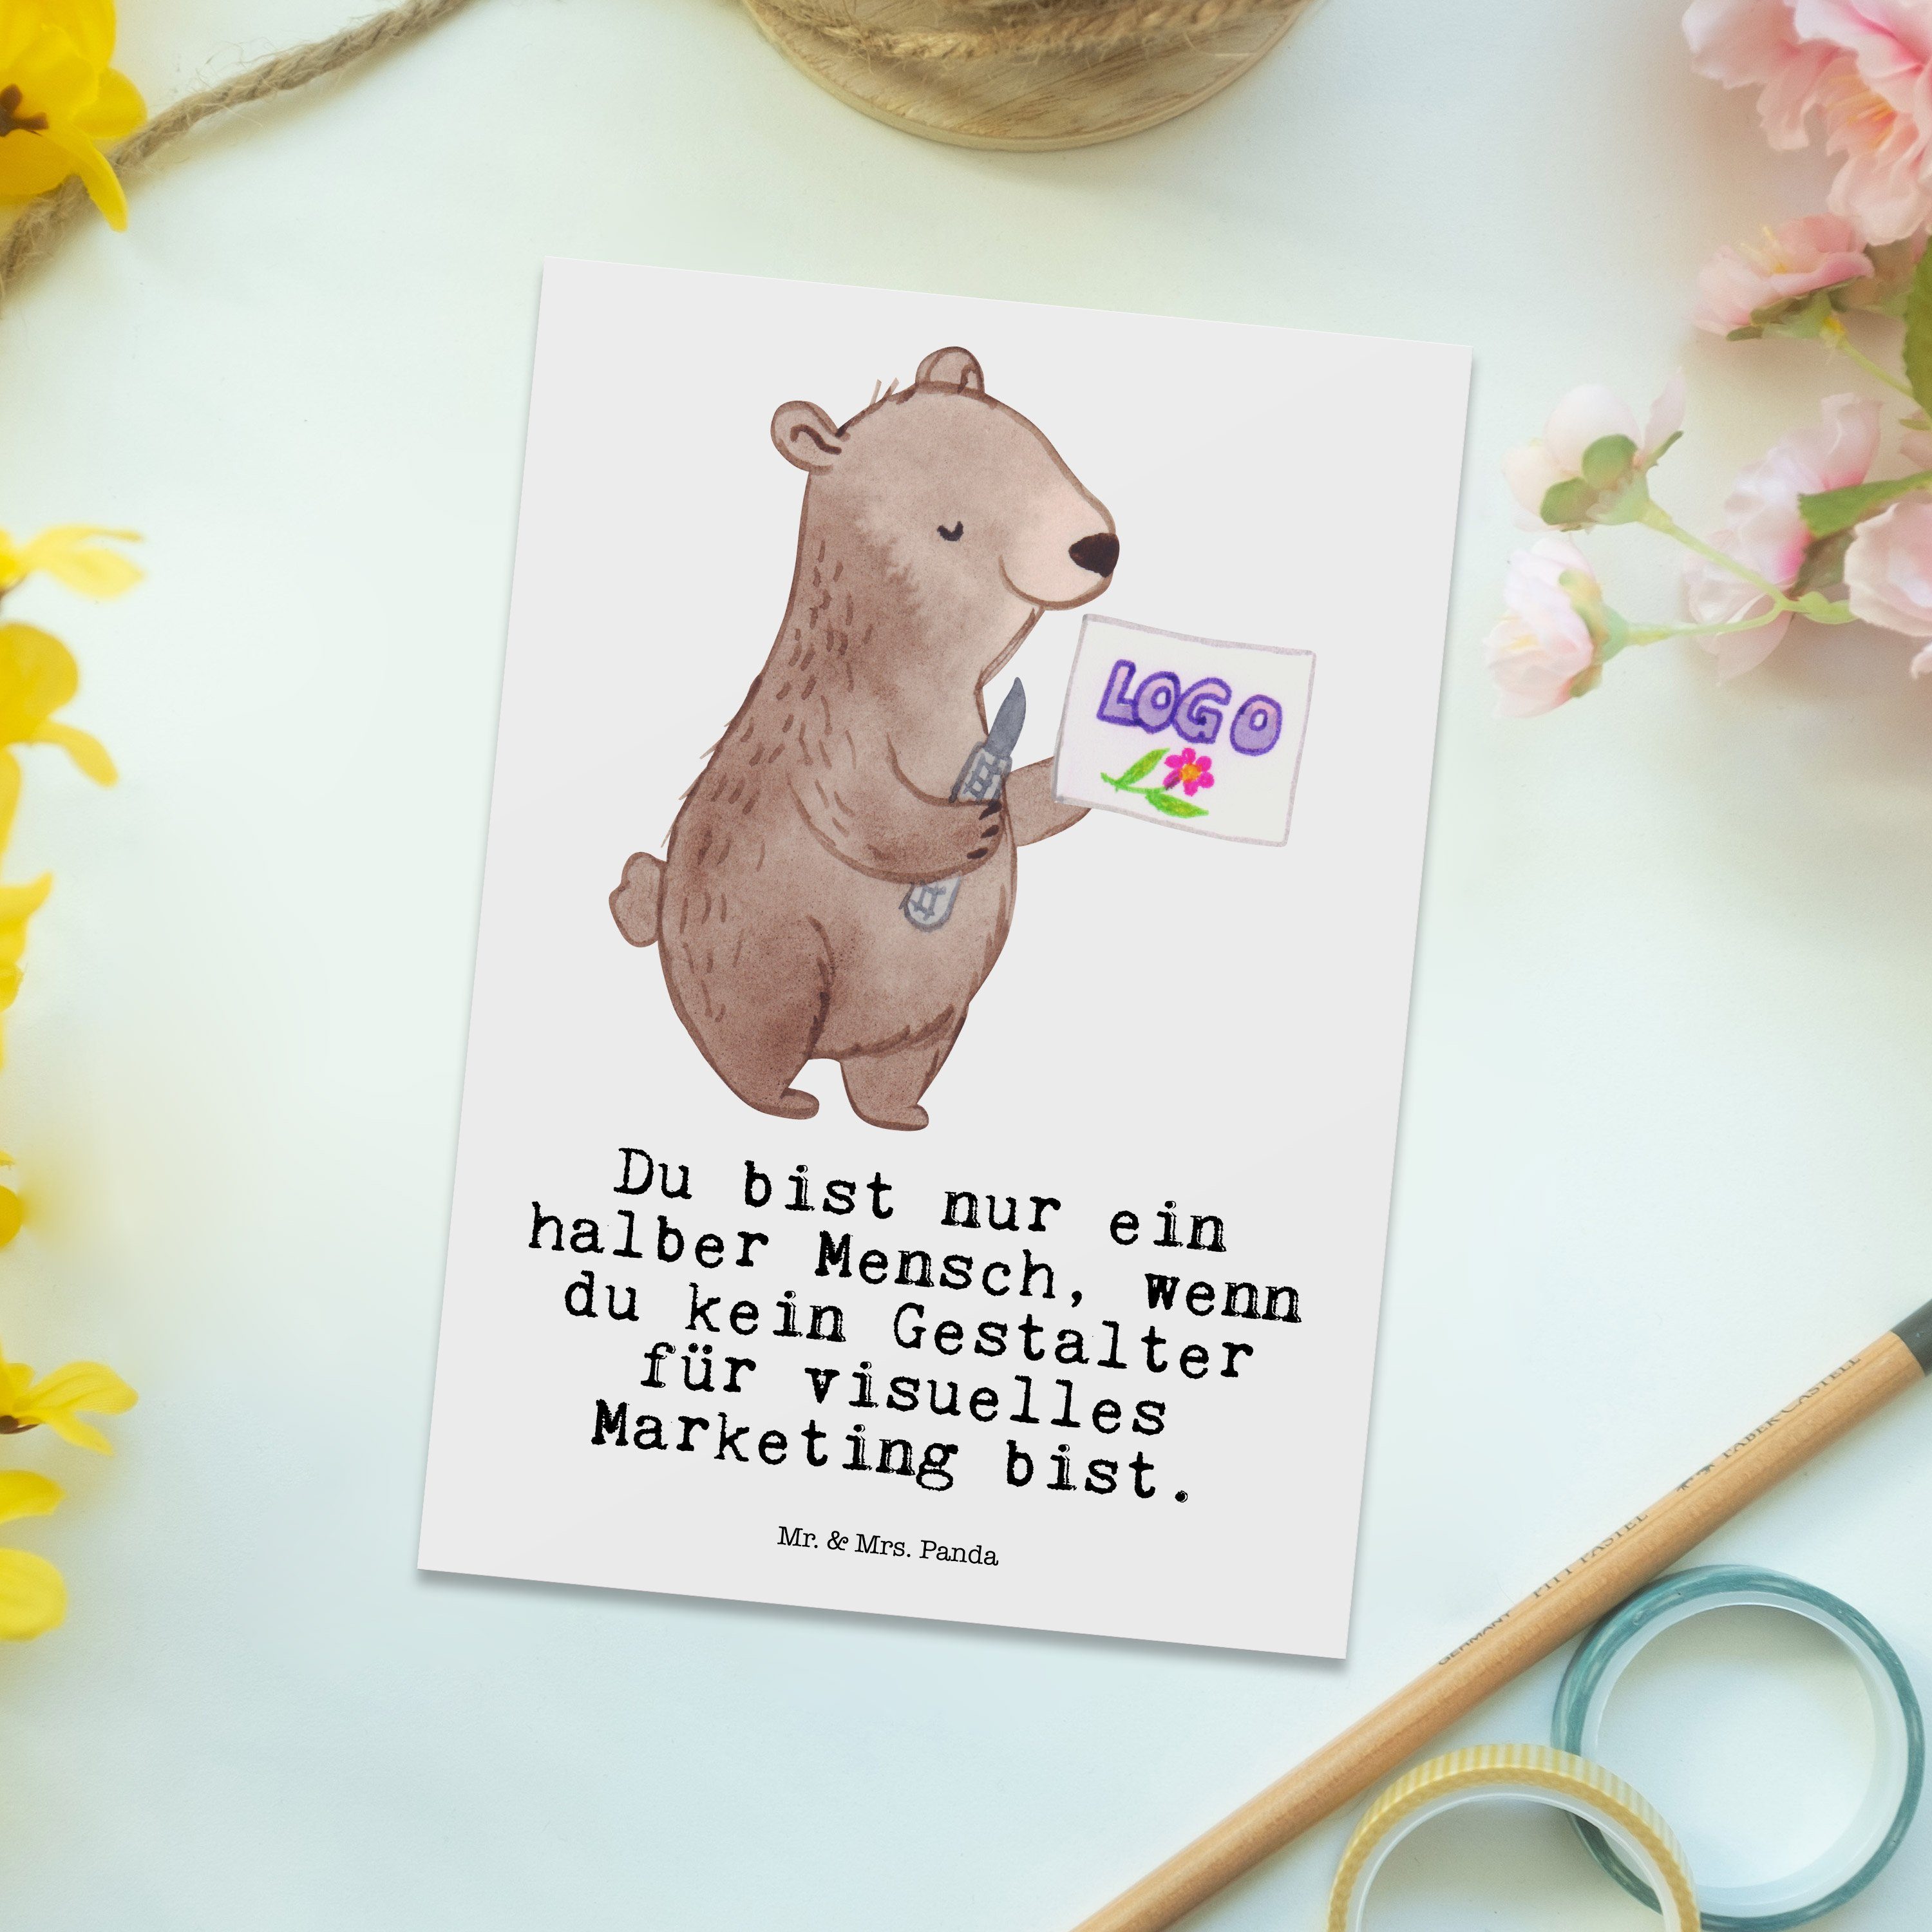 Mr. & Mrs. Panda Postkarte - Weiß Marketing mit Grußkar Herz visuelles Geschenk, Gestalter - für